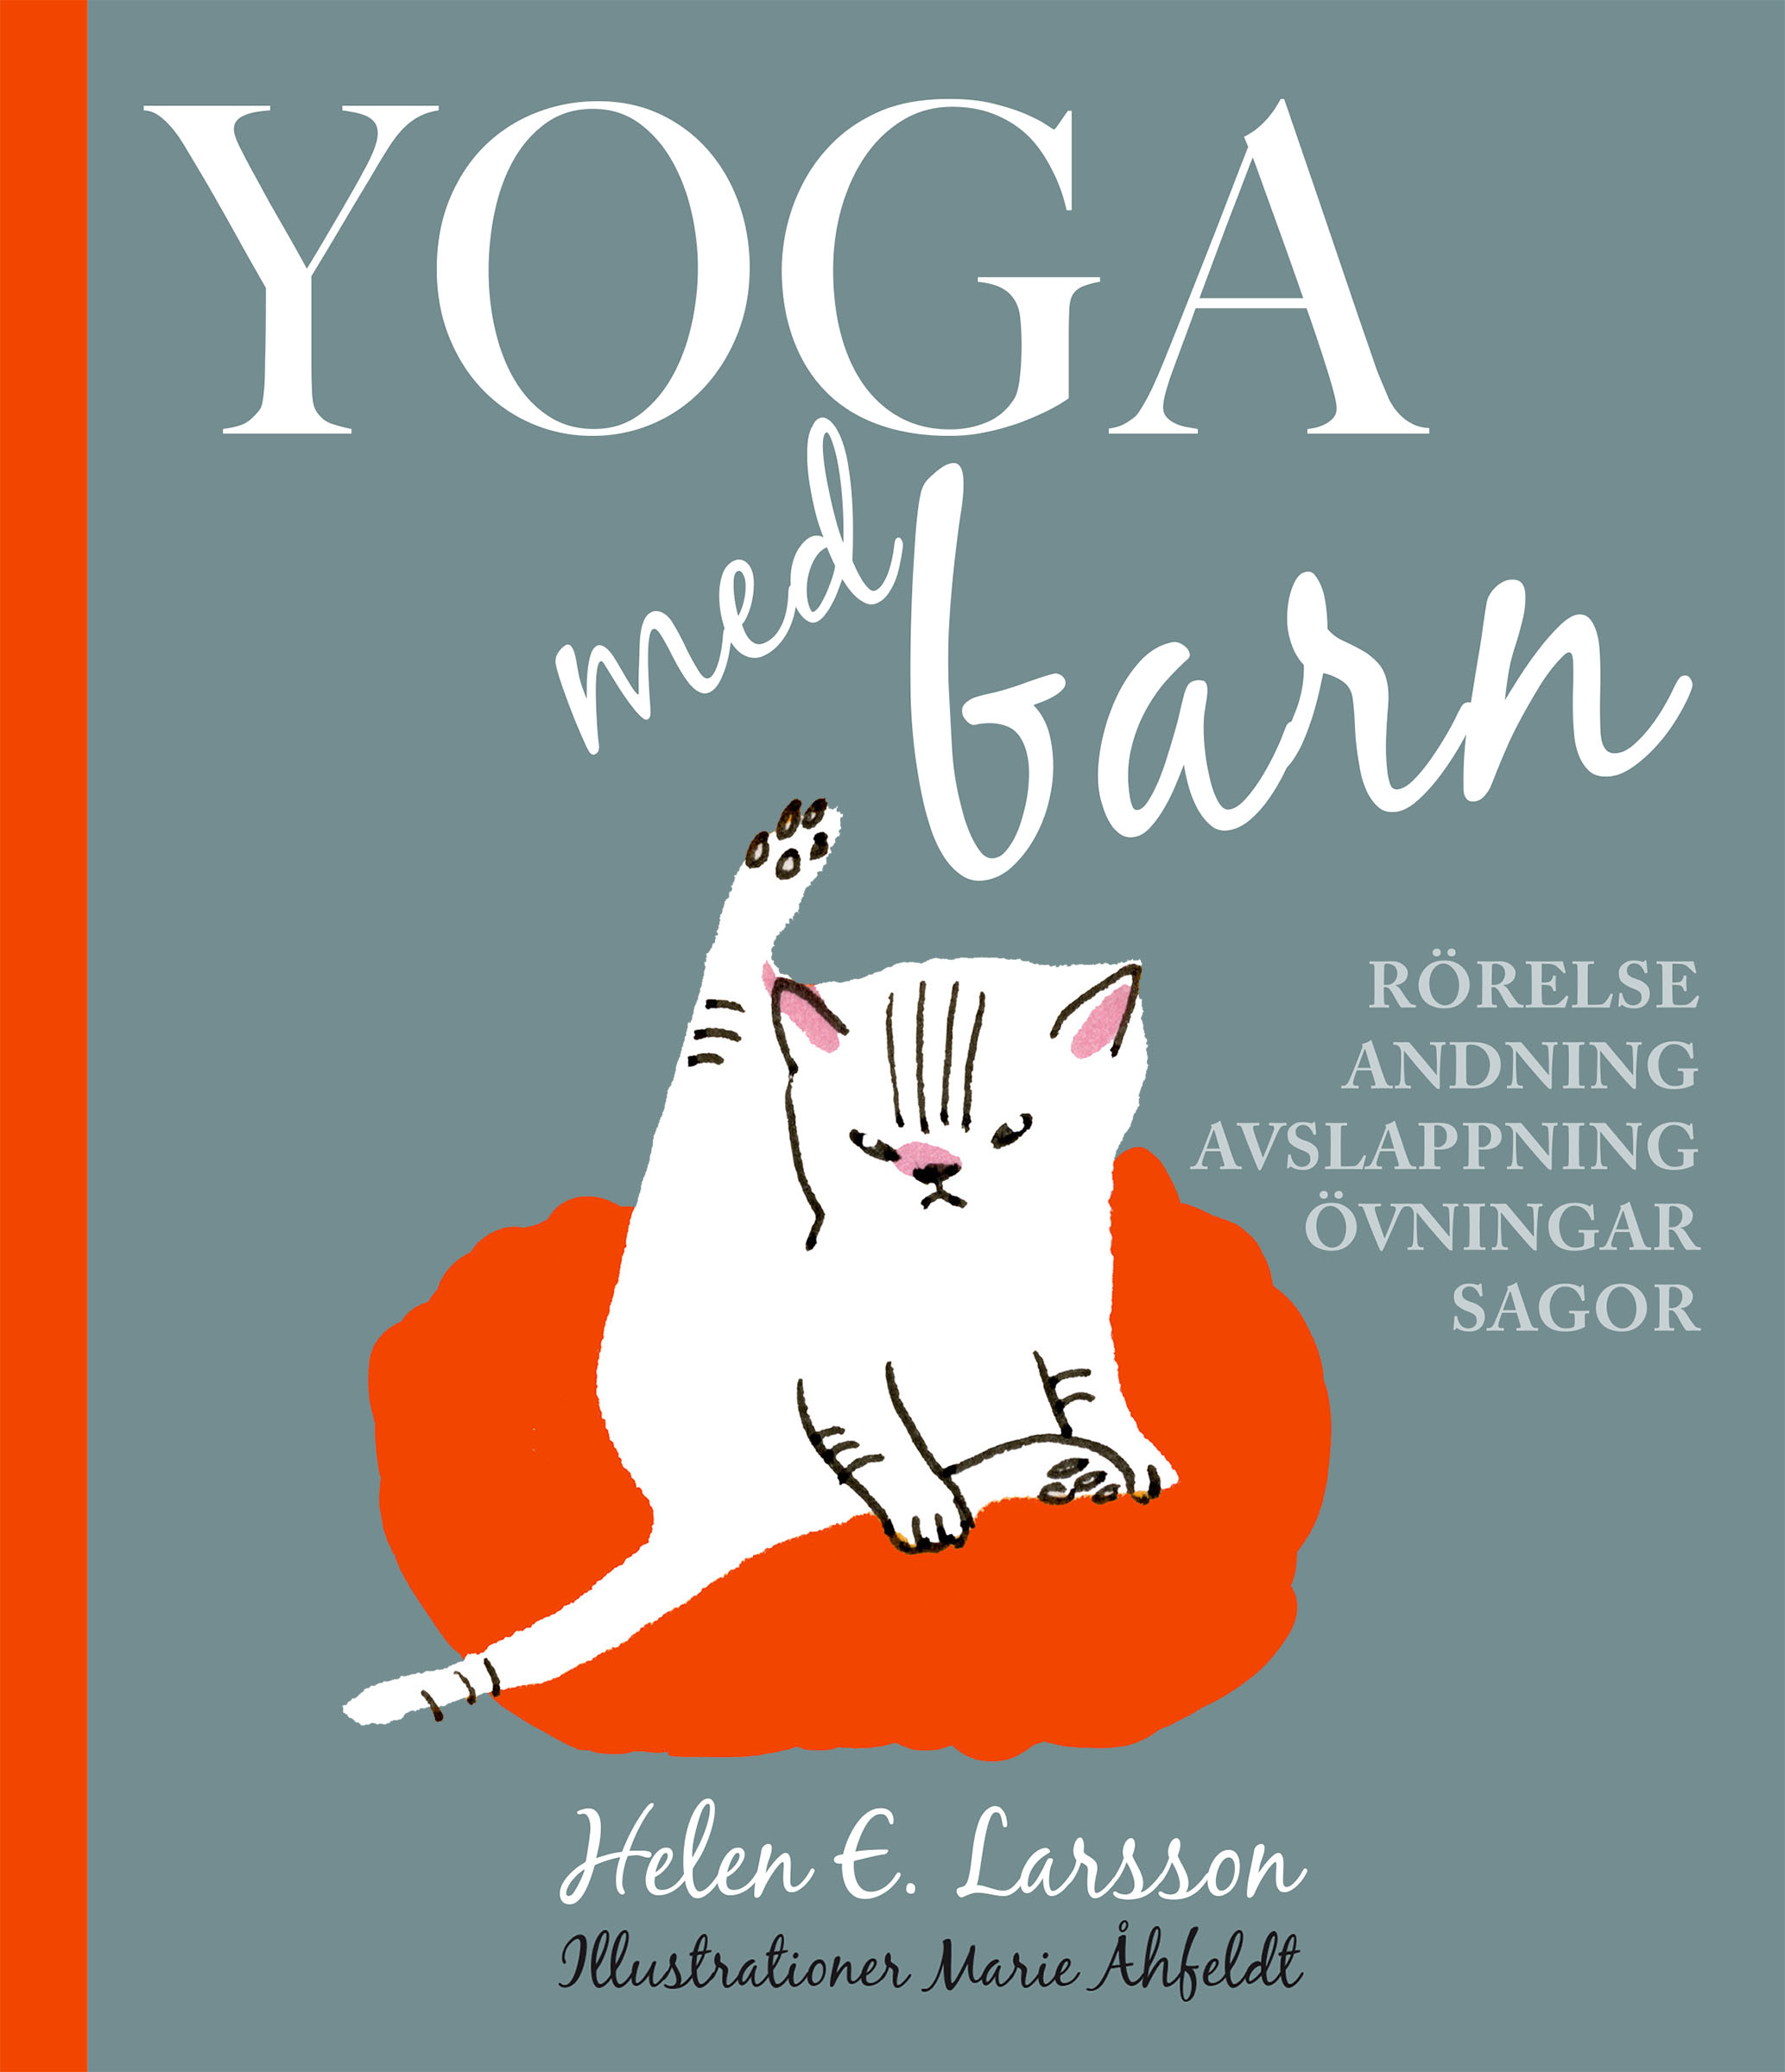 Omslagsbild till barnboken Yoga med barn. Tjurig katt som sträcker upp sitt ben och sitter på en kudde med uppstudsig min. 